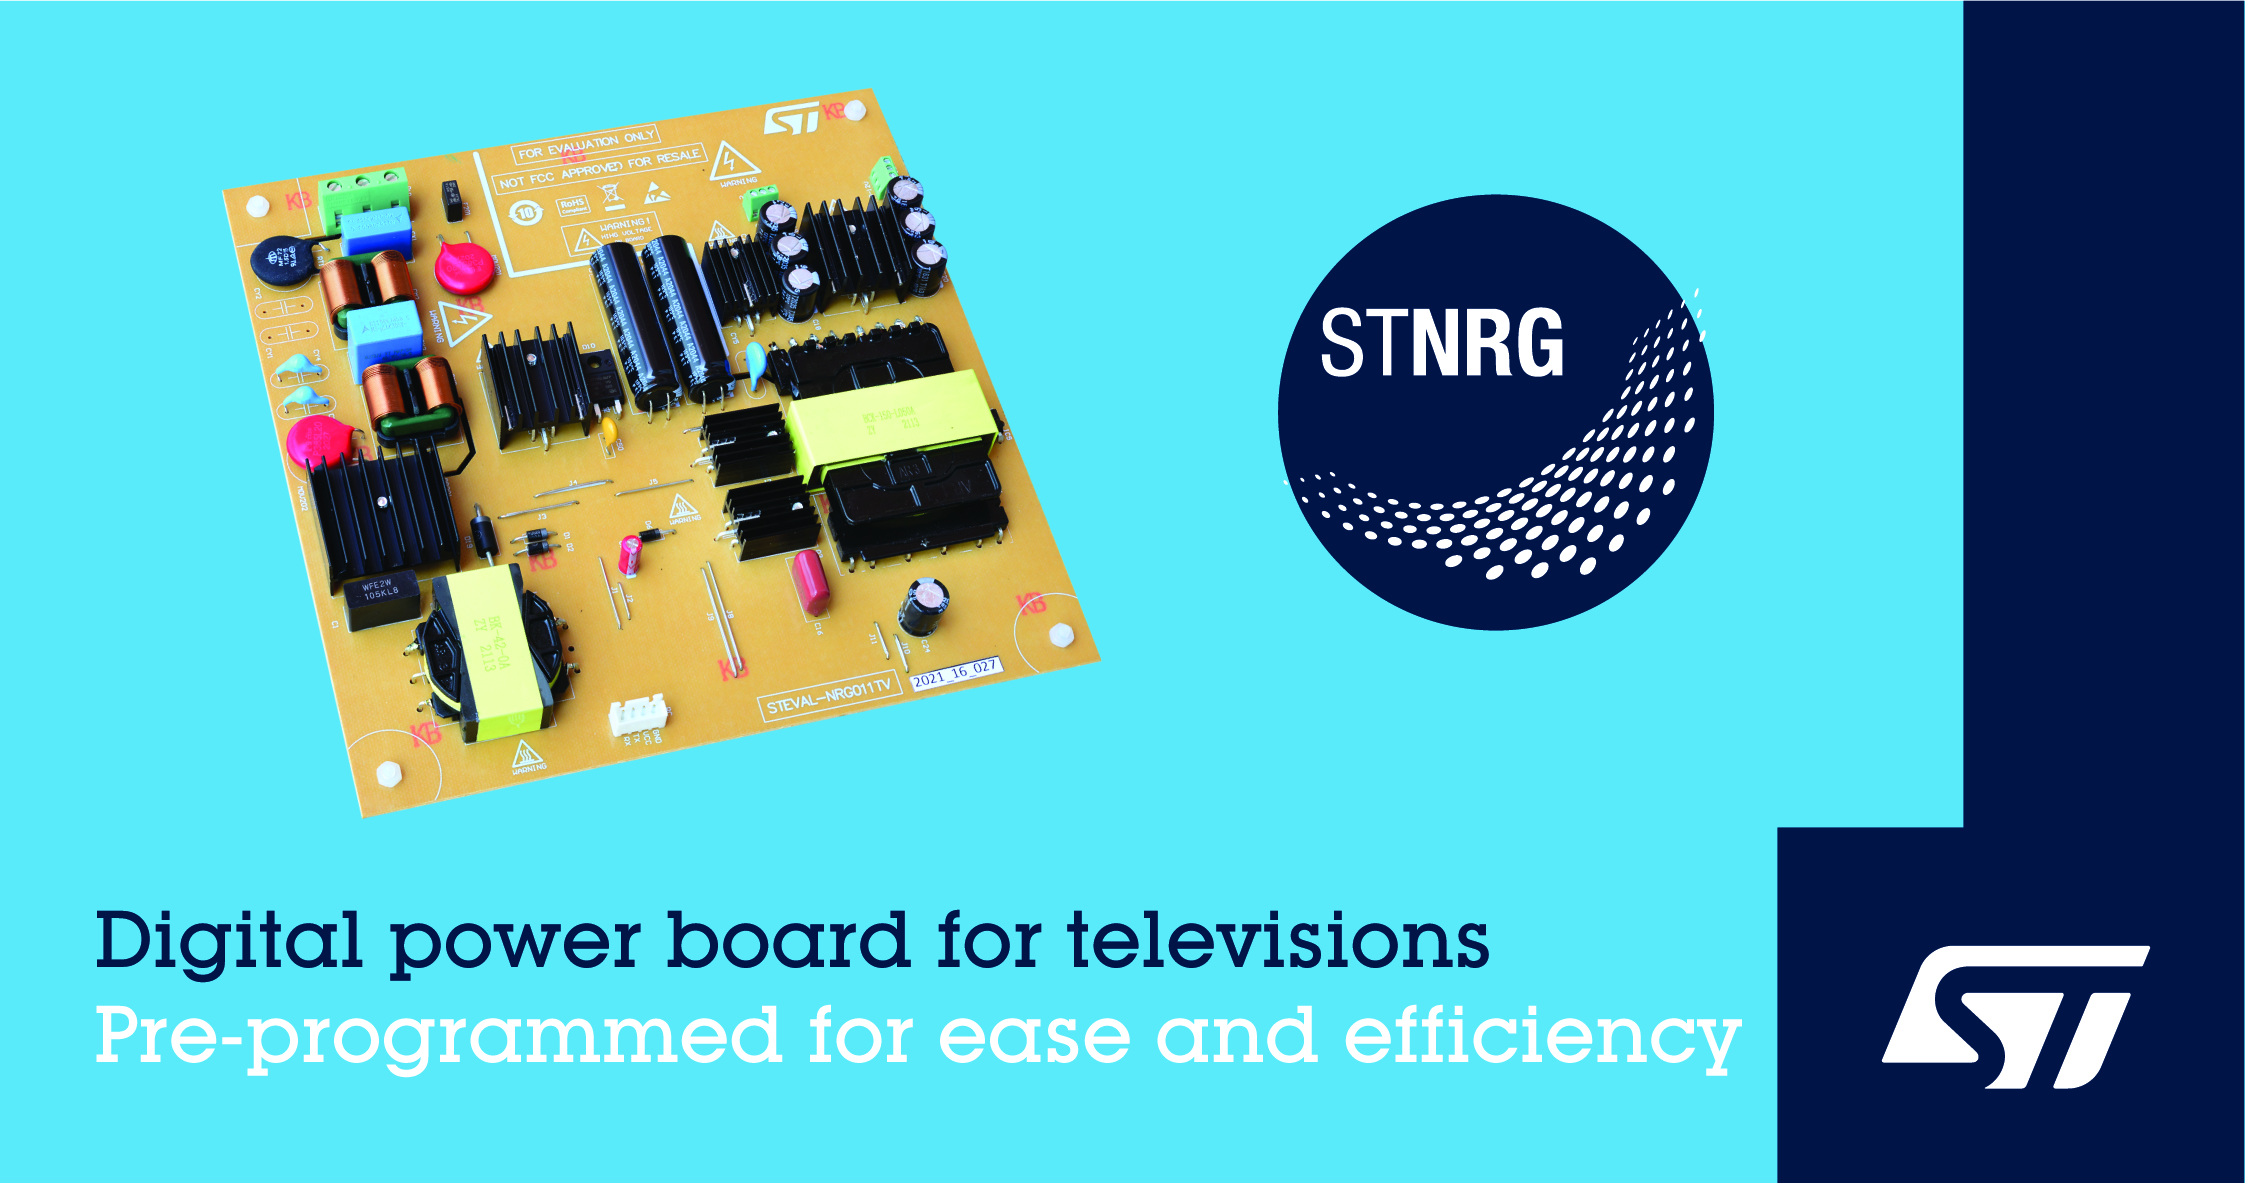 意法半导体 LED 电视 200W 数字电源解决方案满足严格的生态设计标准